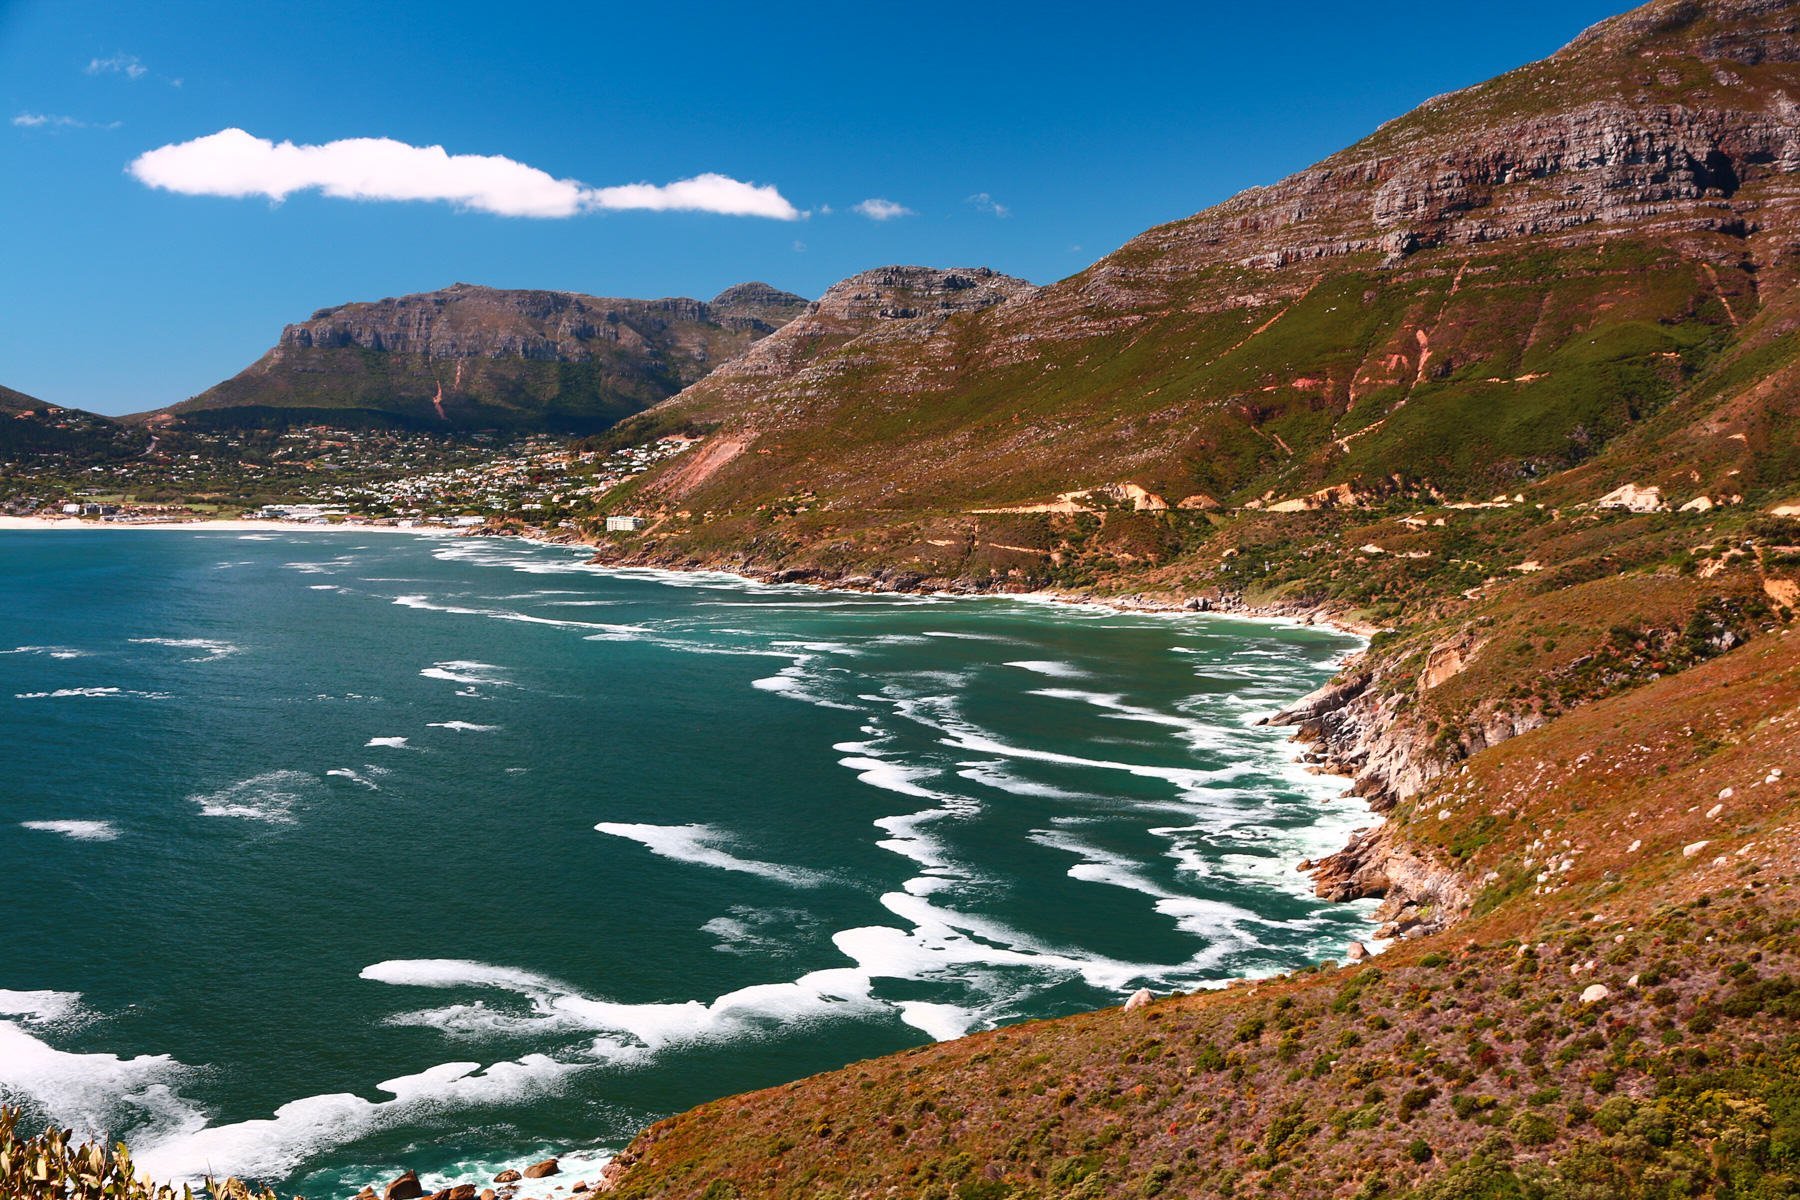 Lire la suite à propos de l’article L’Aventure selon SEAL, épisode 27 : Odyssée grand angle en Afrique du Sud